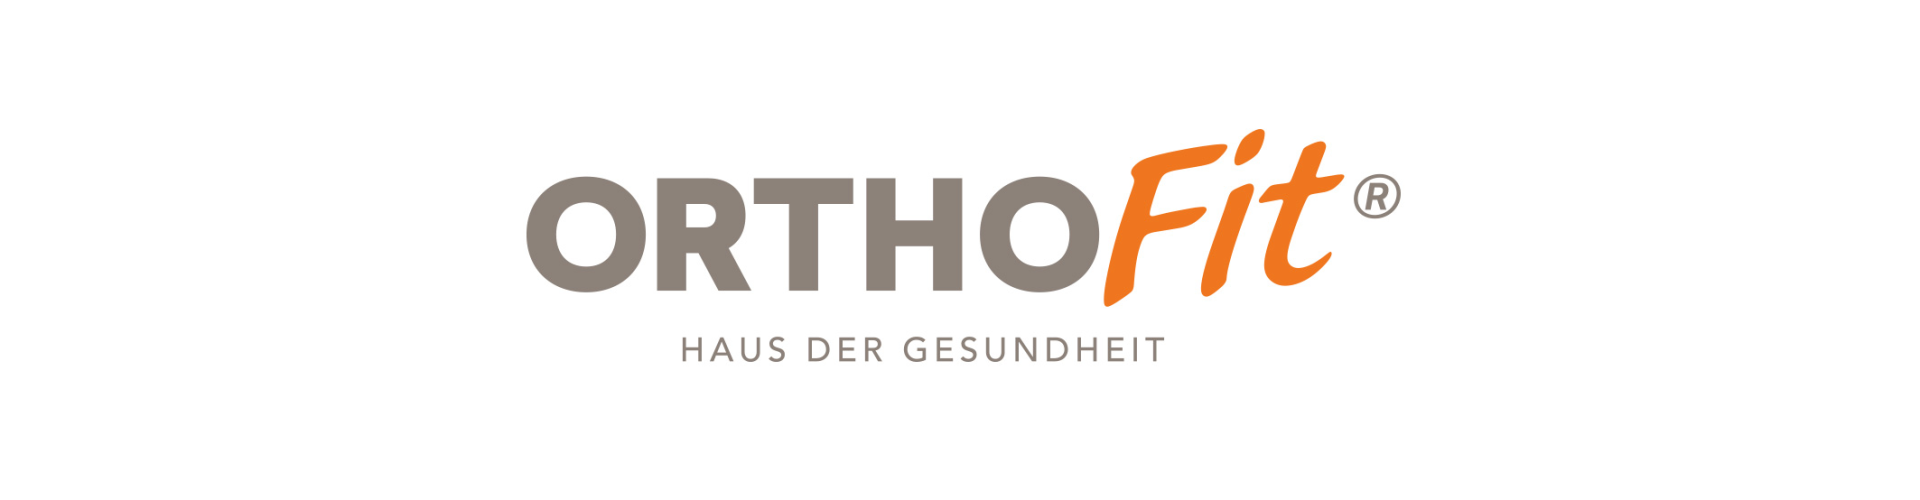 Orthofit Haus der Gesundheit Logo mit viel Rand 2022 Kopie